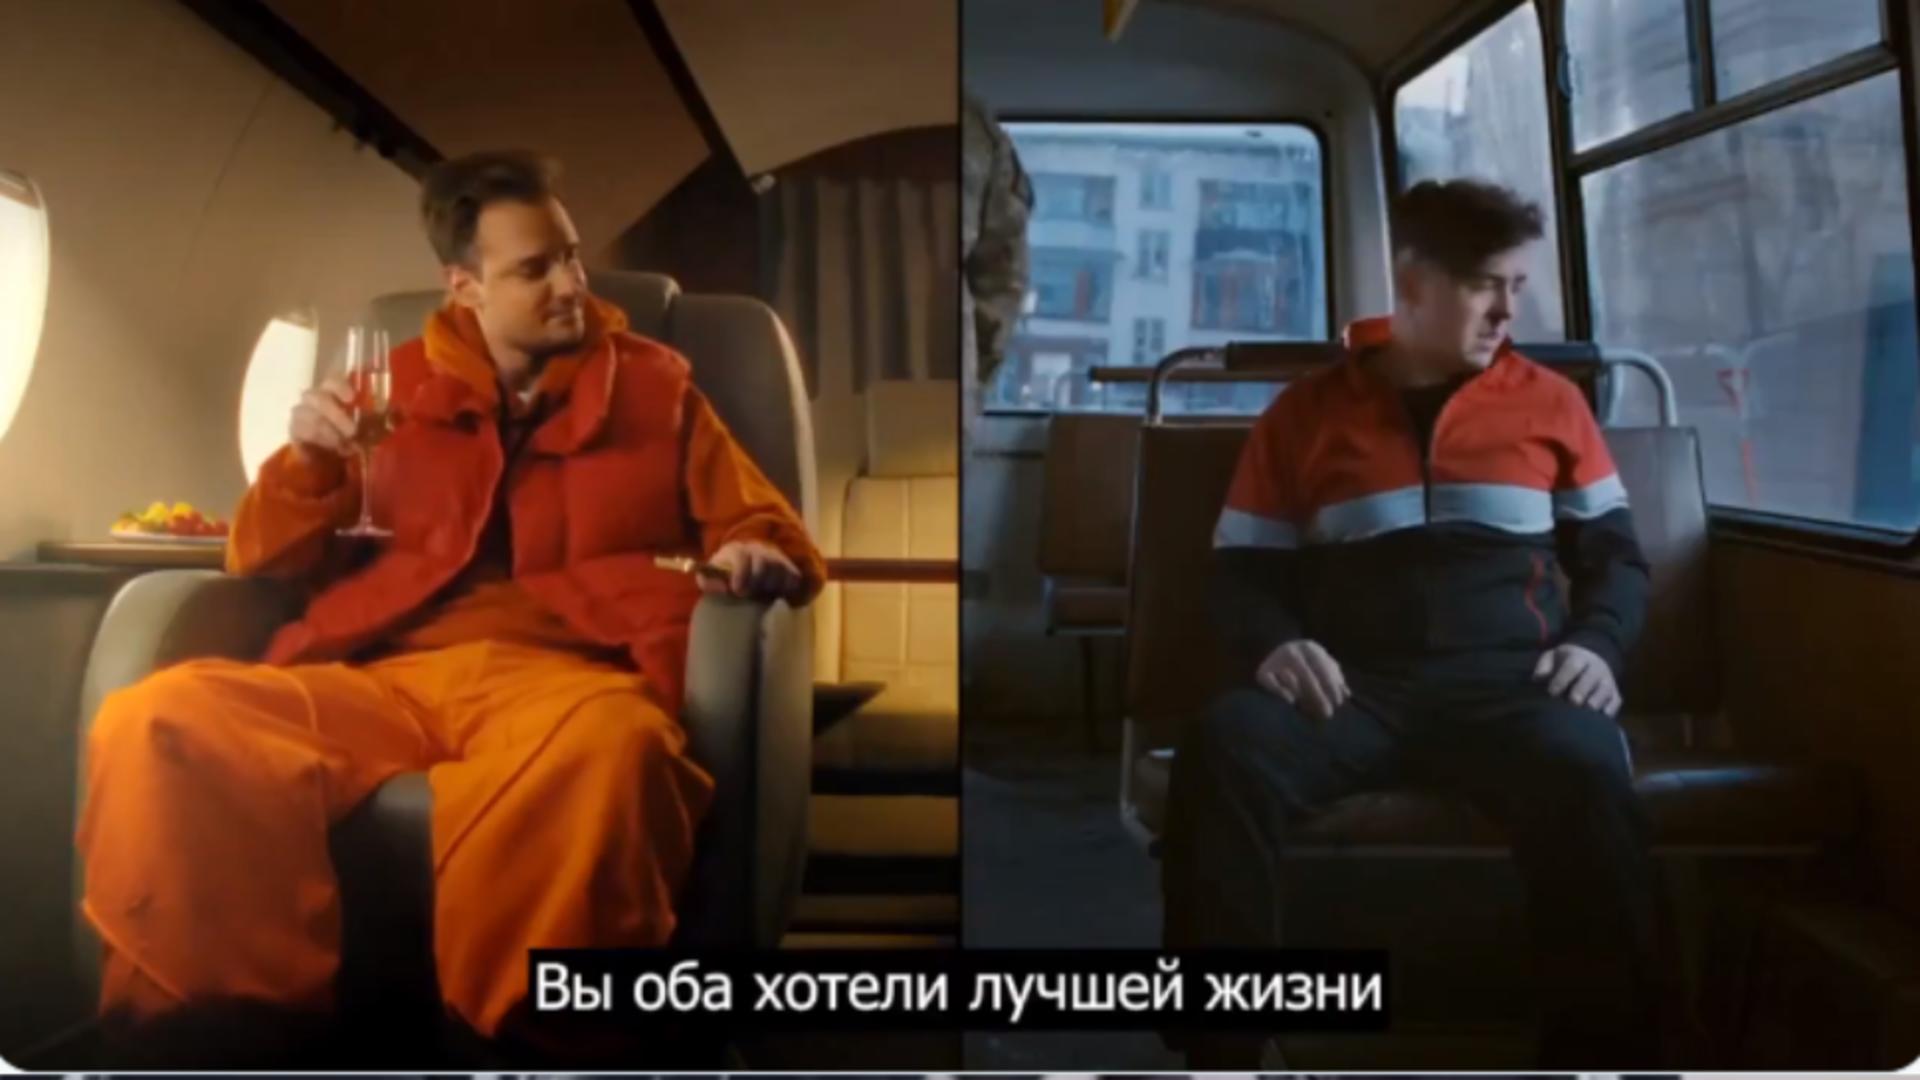 Propaganda rusă nu are limite! Buget uriaș și actori preofesioniști pentru videoclipul „Fiul lui este în elită, iar tu ești carne de tun”, promovat de Kremlin VIDEO